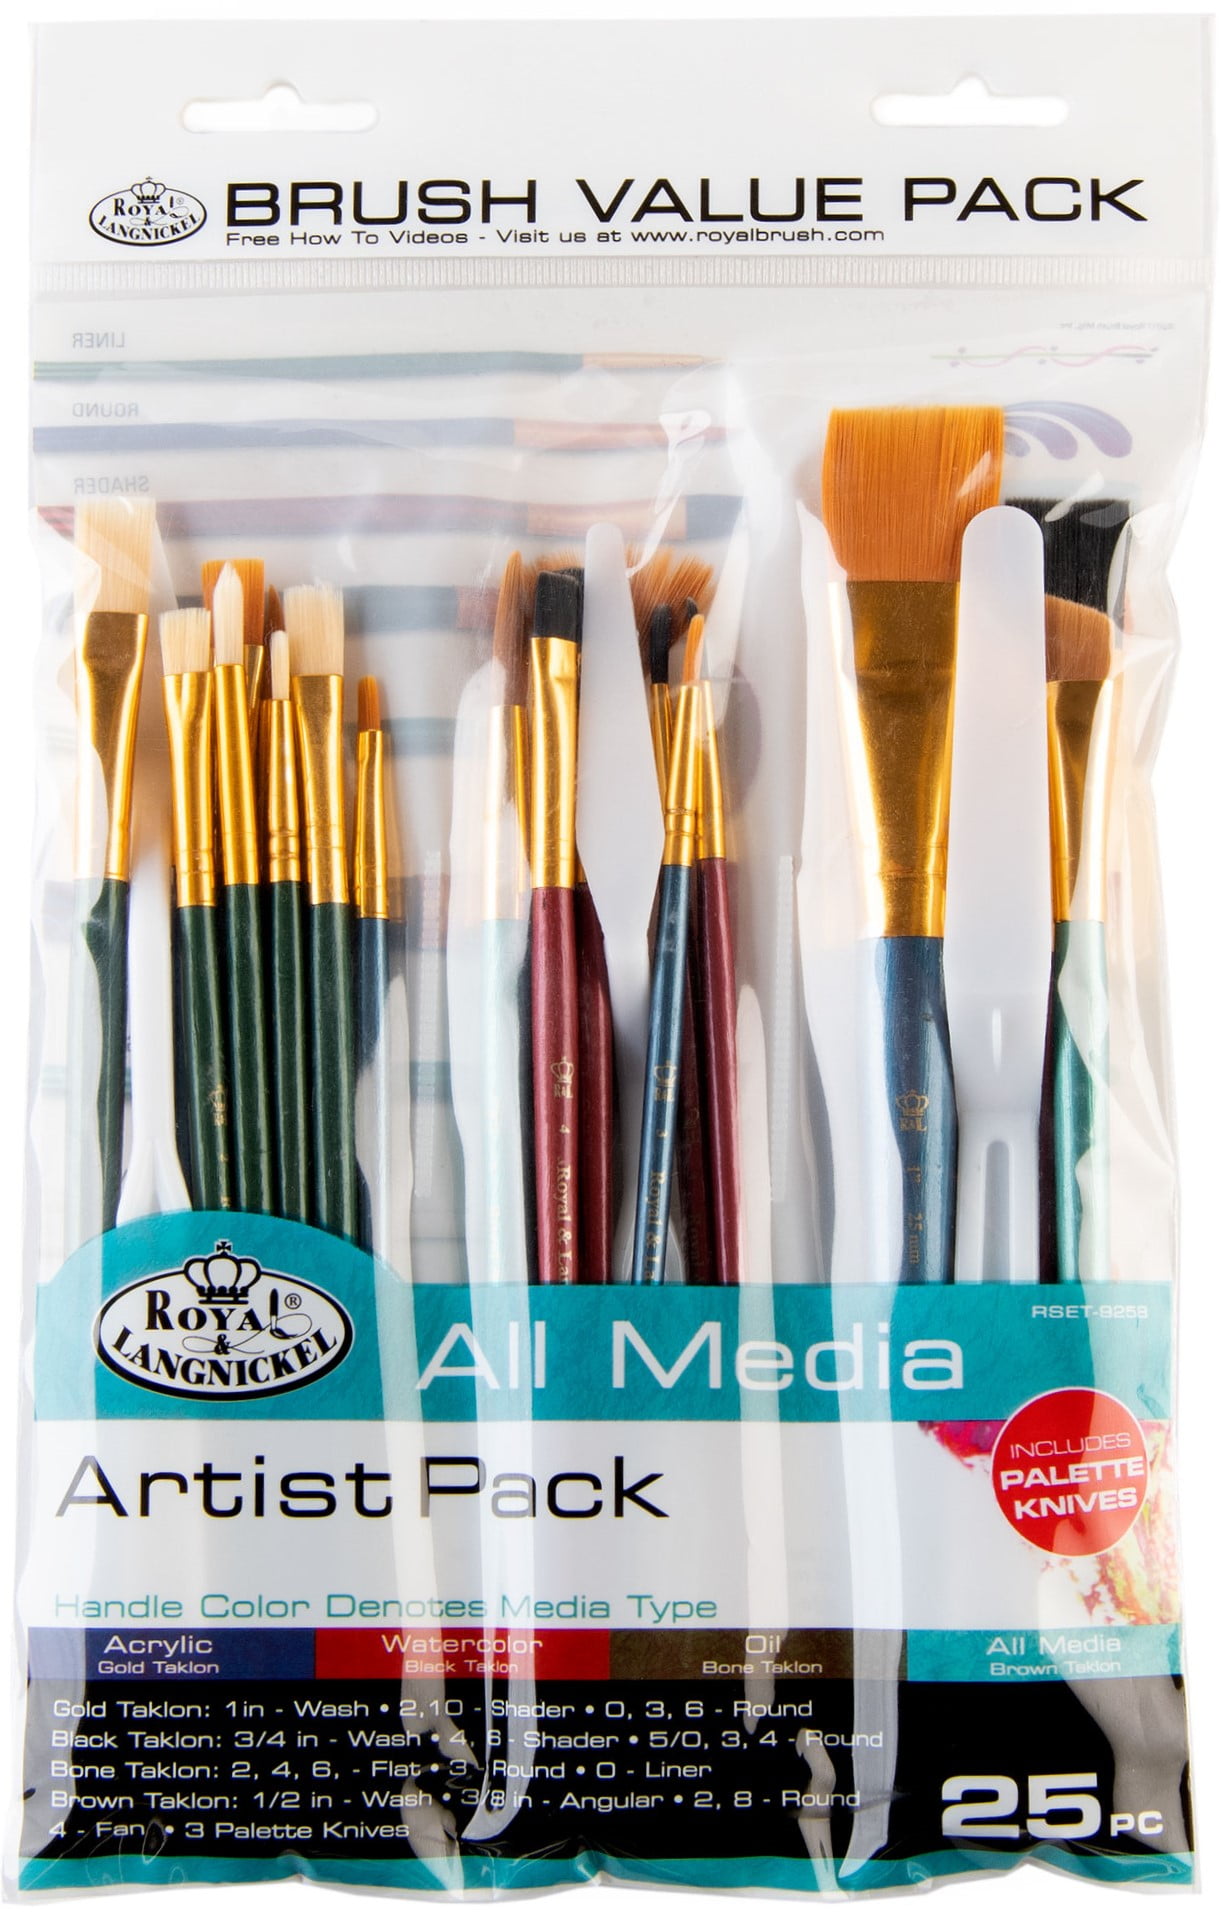 Multipurpose Painting Brush - 5 Inches